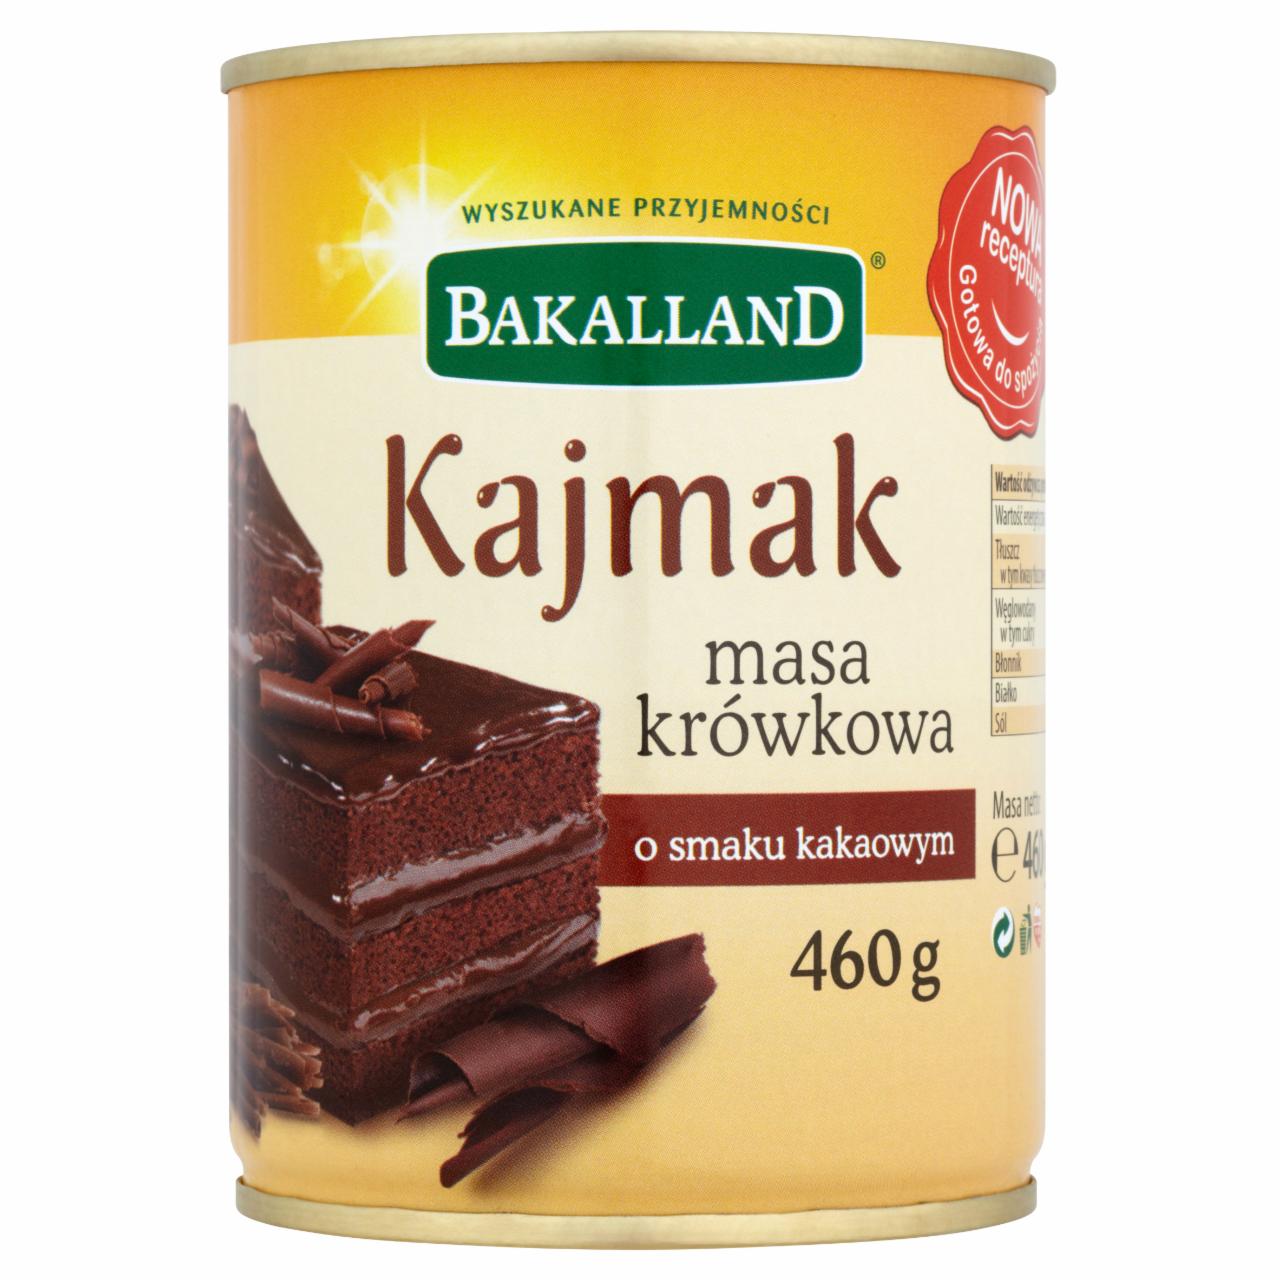 Zdjęcia - Bakalland Kajmak masa krówkowa o smaku kakaowym 460 g